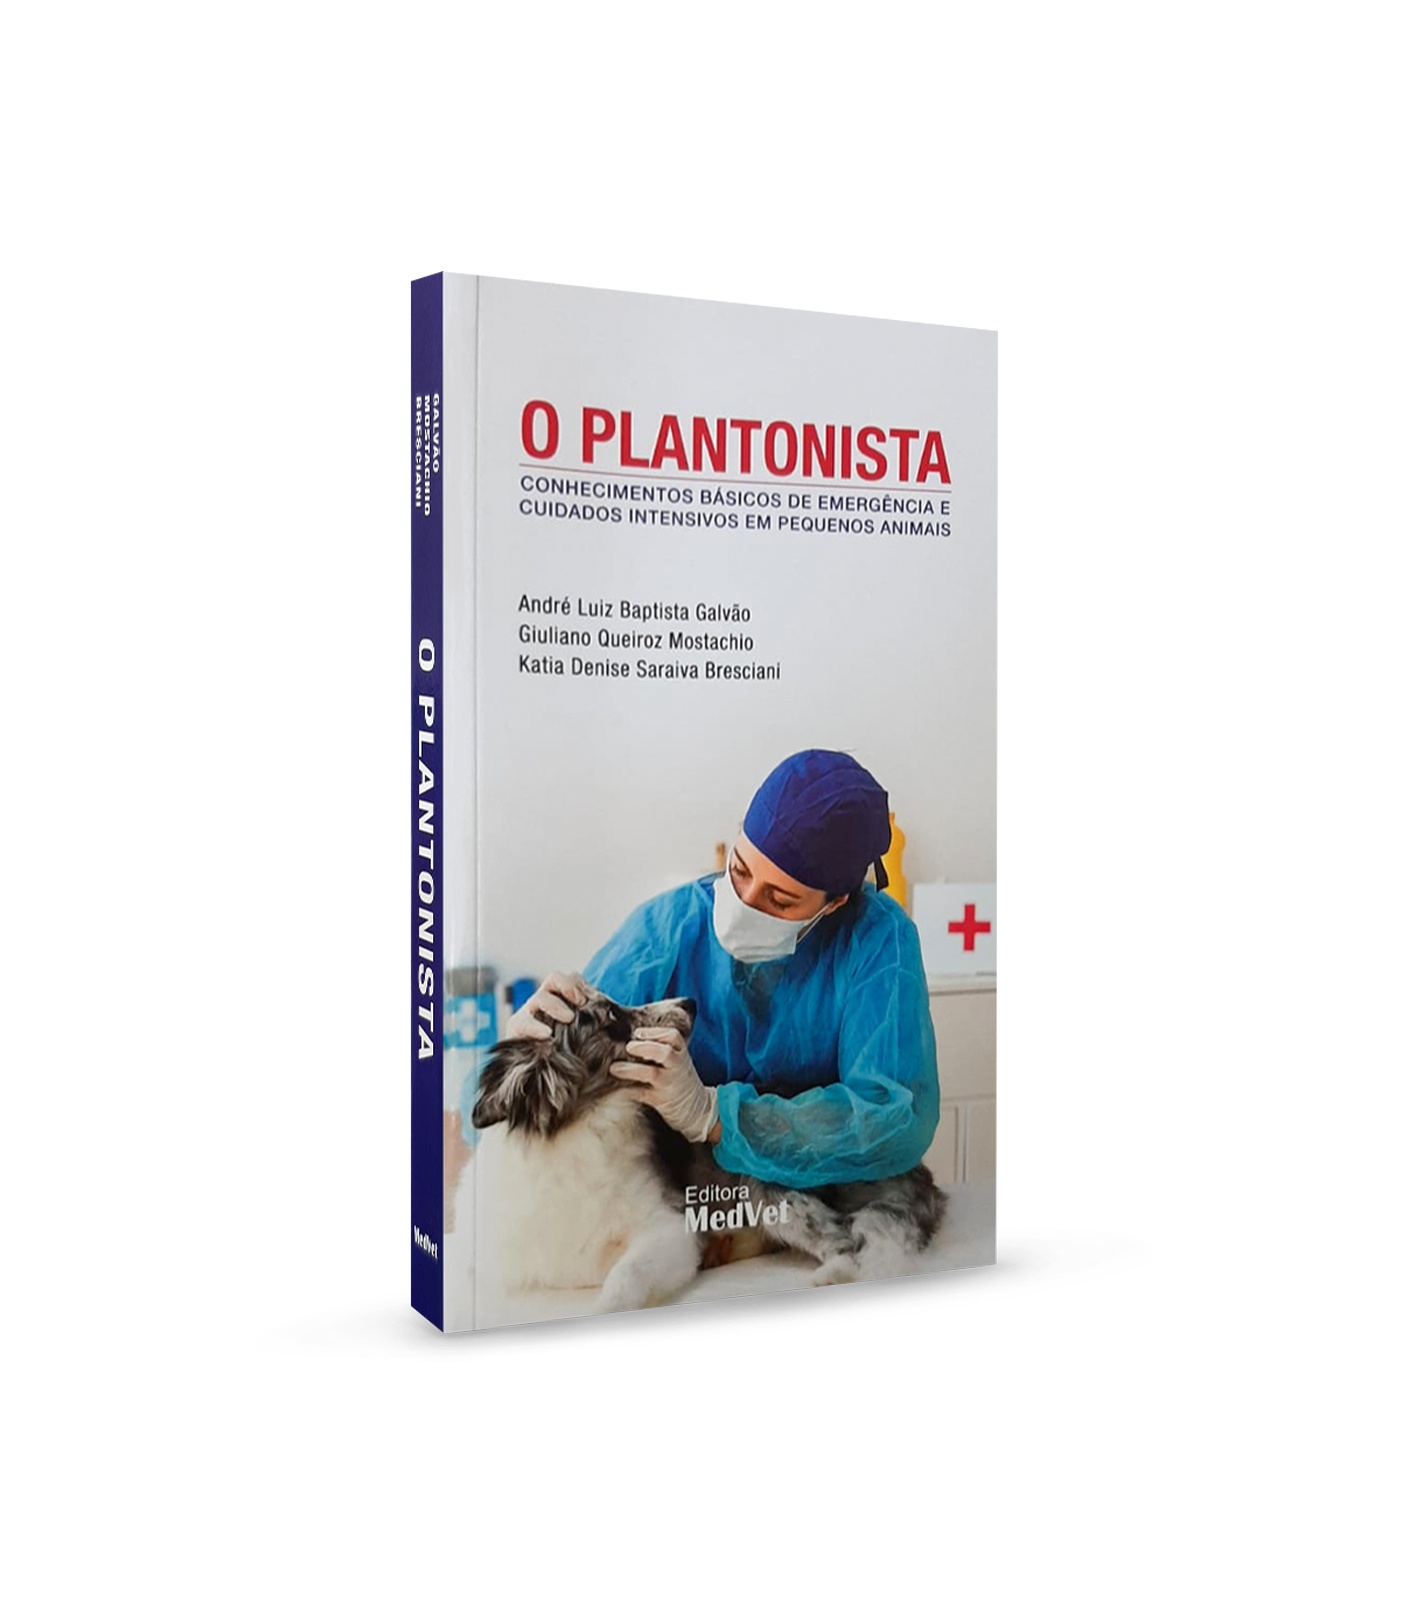 O Plantonista - Conhecimento Básico De Emergência E Cuidados Intensivos Em Pequenos Animais